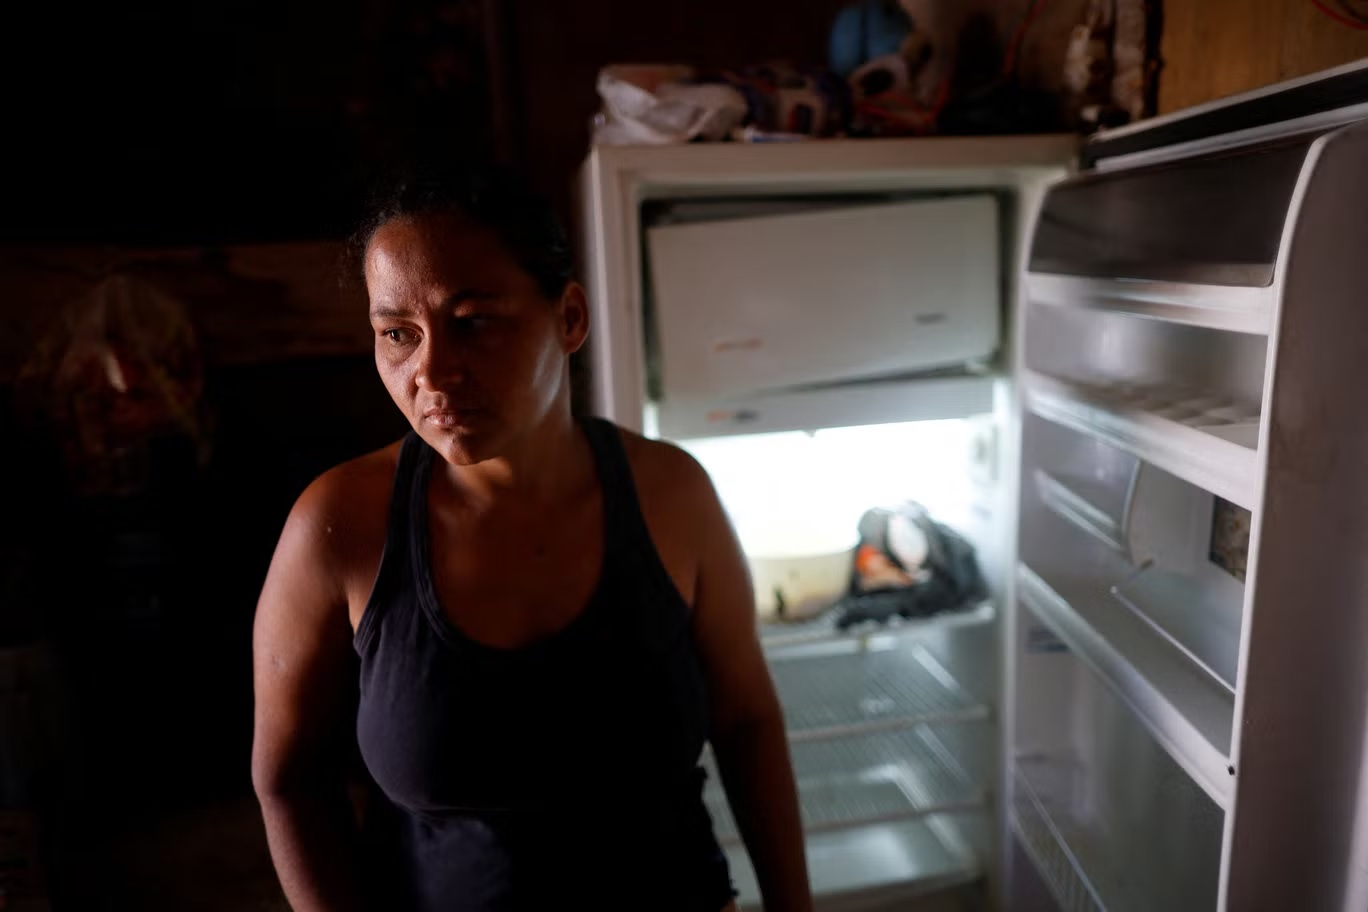 لوسيانا ميسياس دوس سانتوس، 29 سنة، تقف لالتقاط صورة أمام ثلاجتها الفارغة في منزلها في "فافيلا" استروتورال الفقير في العاصمة برازيليا (رويترز)